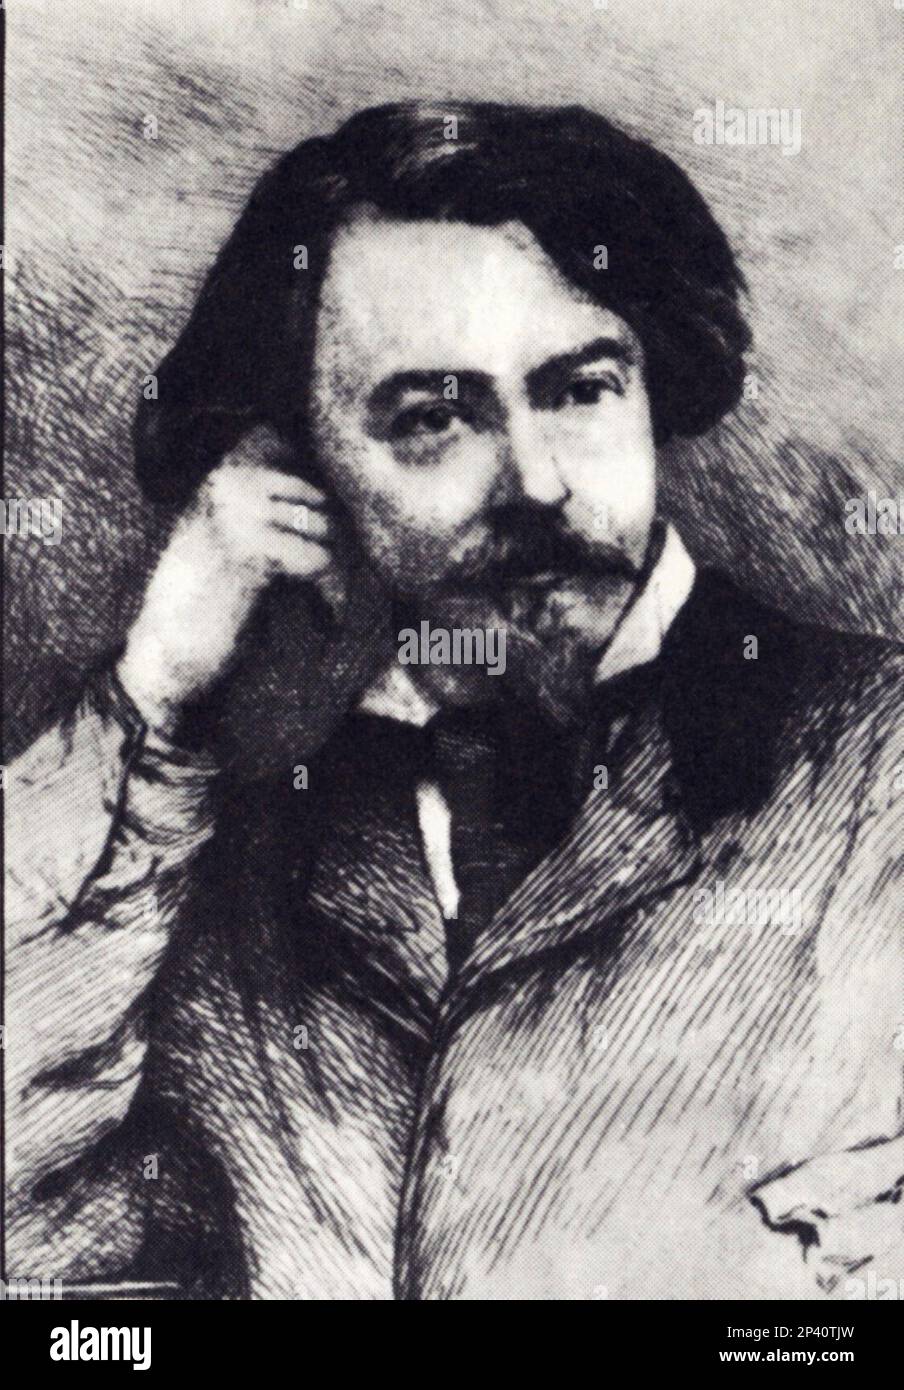 L'écrivain et poète français VILLIERS de l'ISLE-ADAM ( 1838 - 1889 ) - SCRITTORE - POETA - POESIA - LETTERATO - LETTERATURA - POÉSIE - SIMBOLISMO - SIMBOLISTA - ritrato - bachigi - moustache - SIMBOLIST - SIMBOLISM - Isle Adam ---- Archivio GBB Banque D'Images